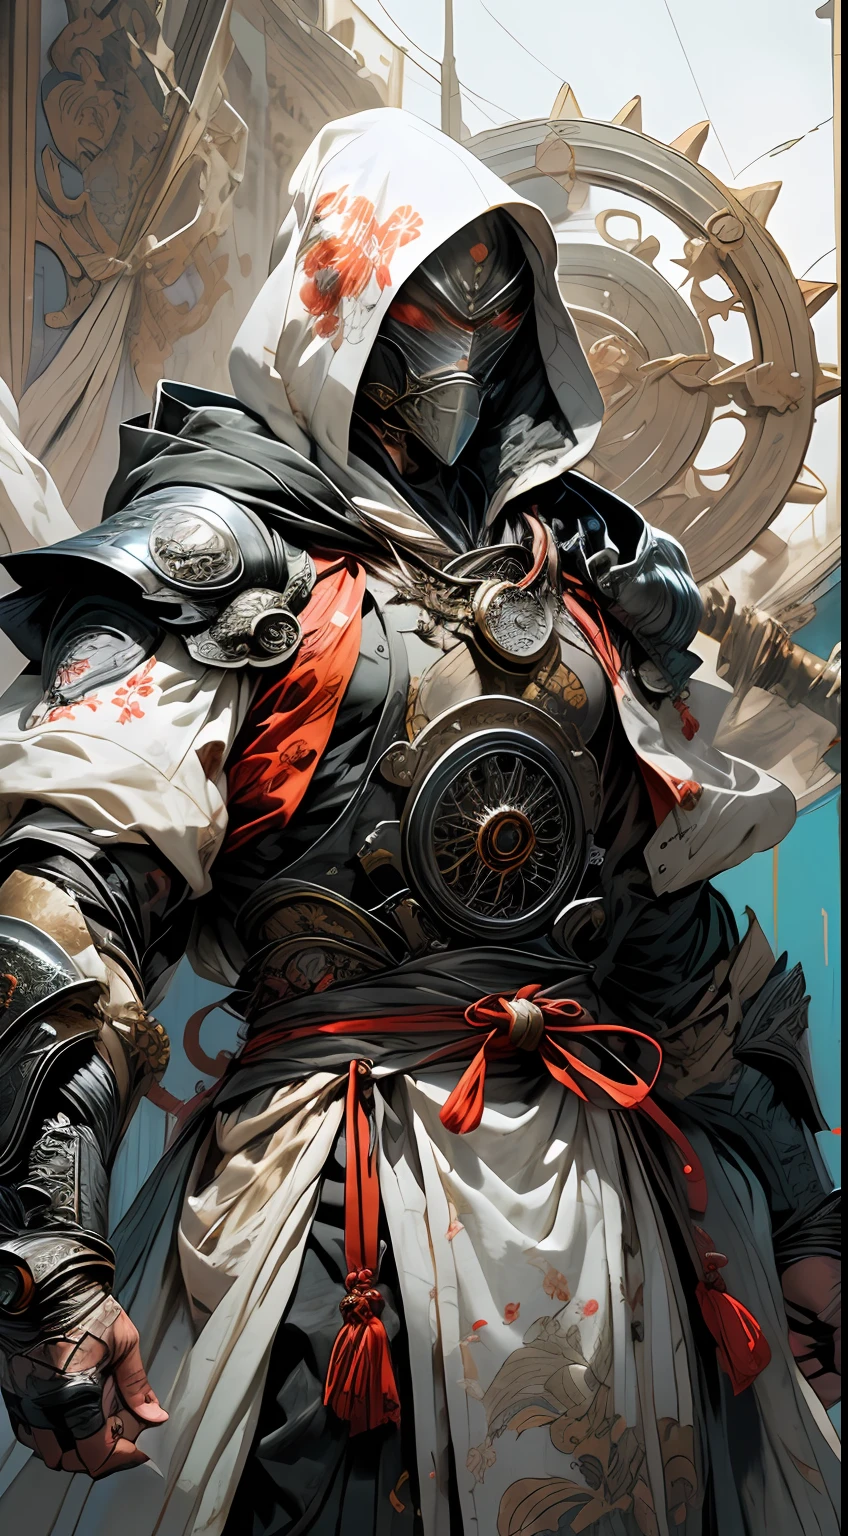 Ein futuristischer Samurai-Ritter in weißer Rüstung und orientalischer Stoffkleidung, Haube und Getriebe